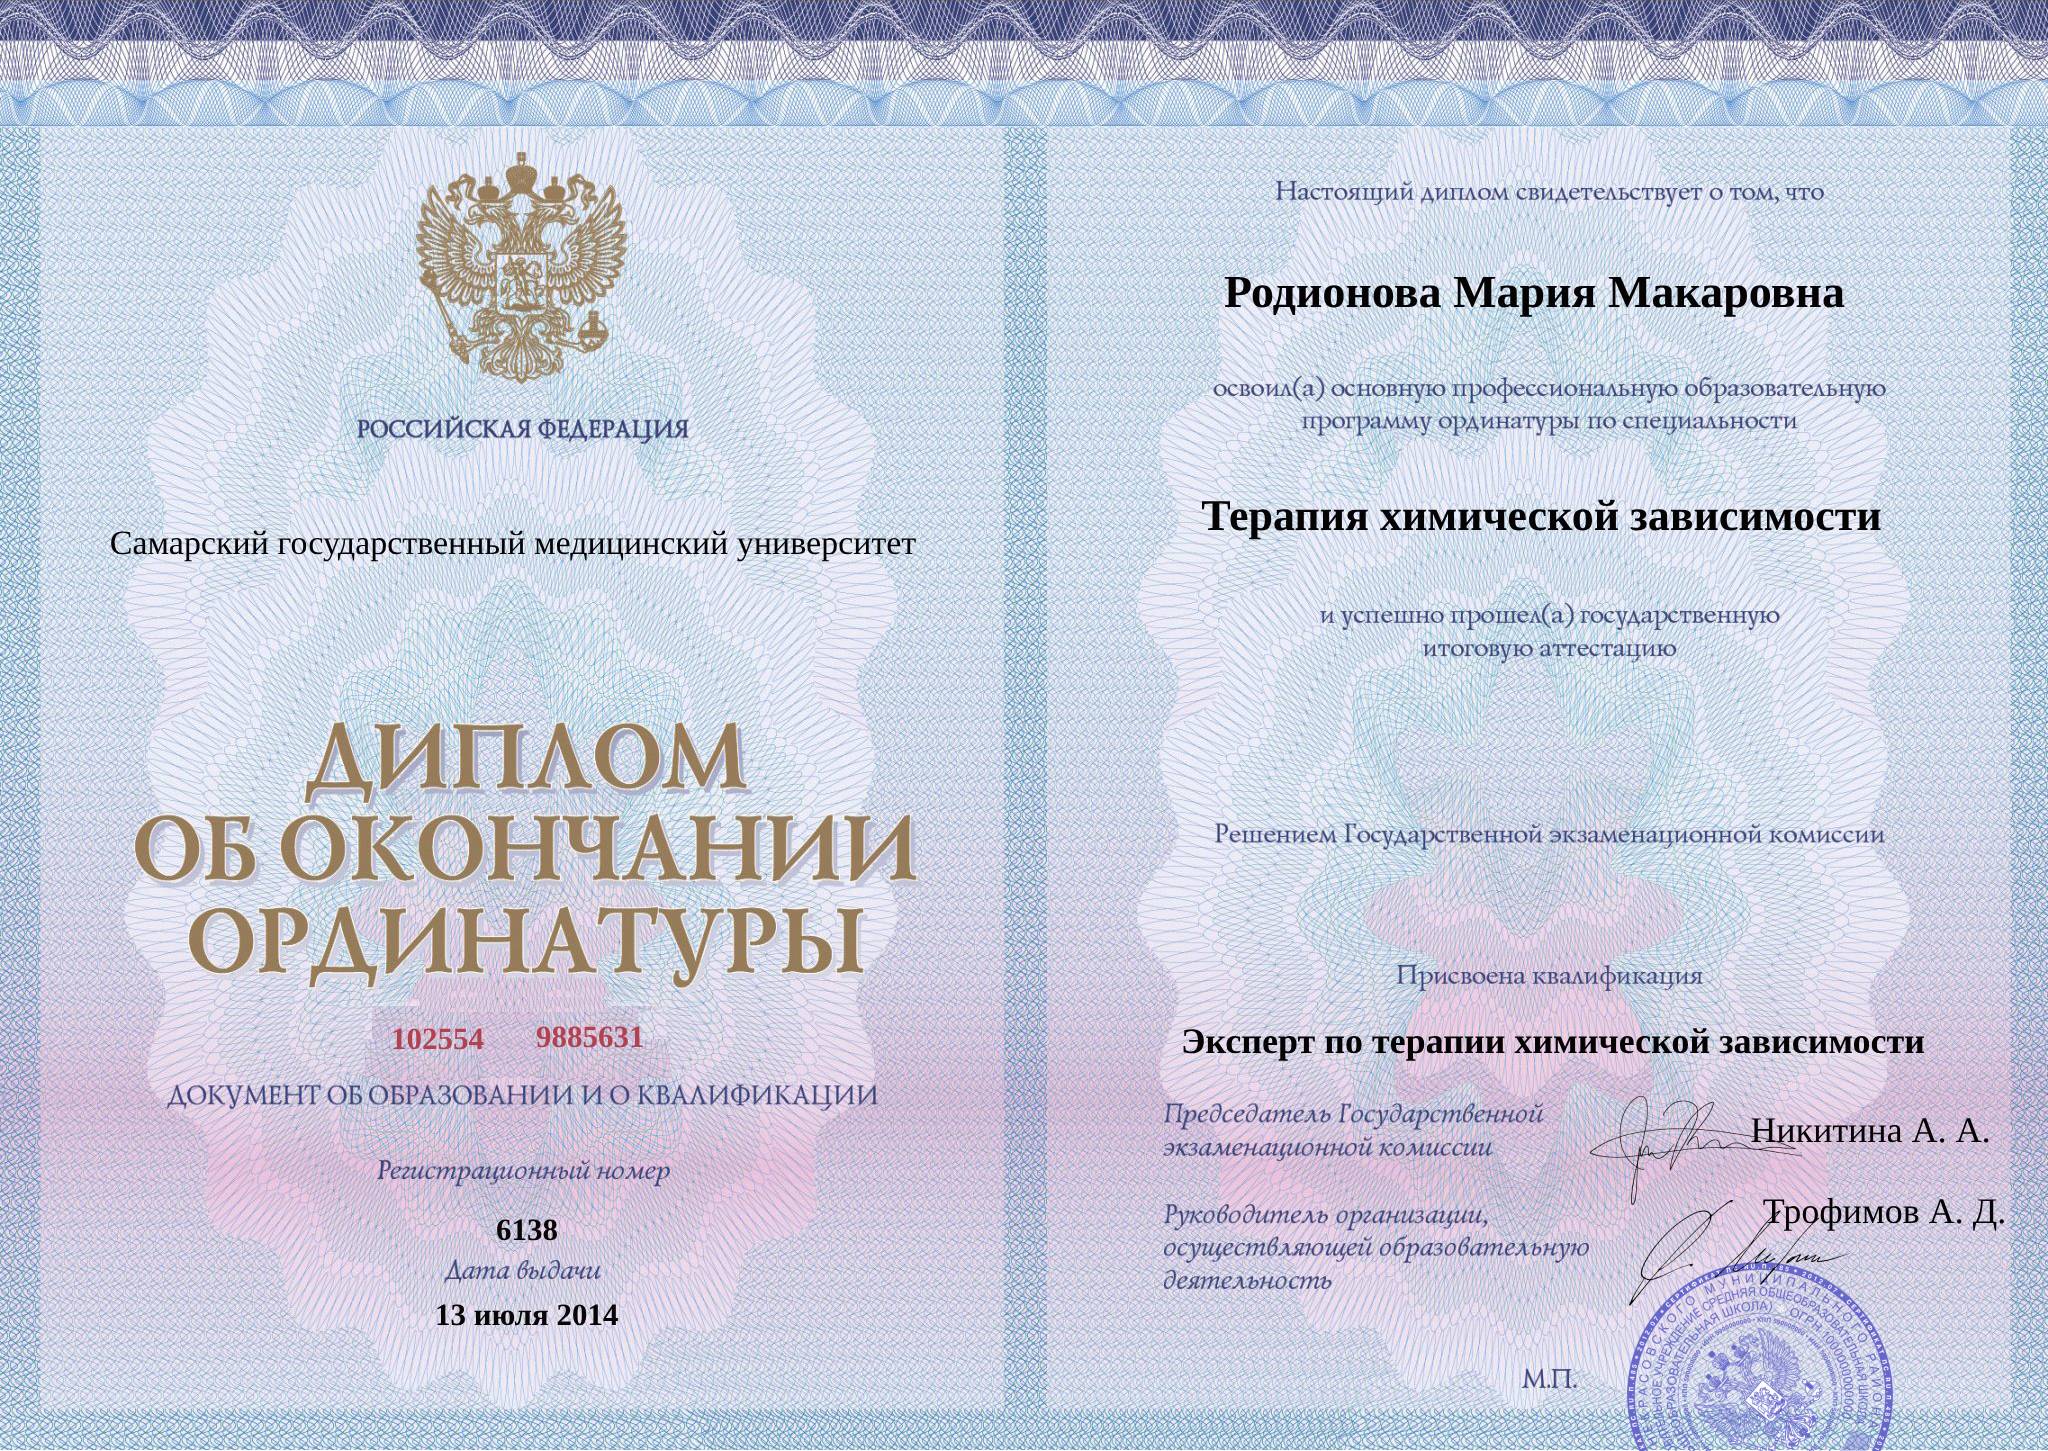 Диплом об окончании ординатуры Родионовой Марии Макаровны